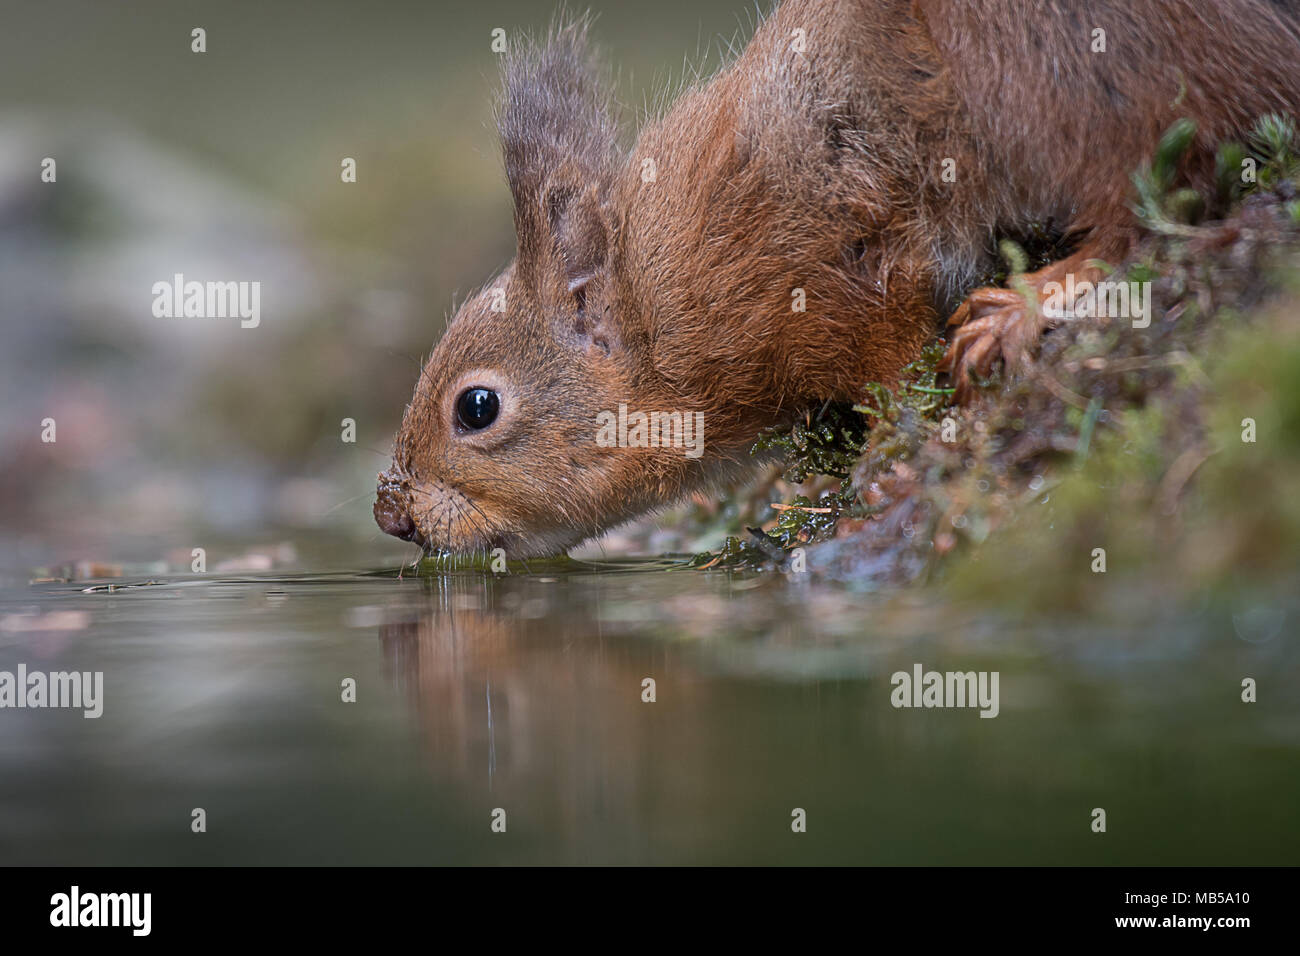 Un très proche de l'image d'un faible niveau d'un écureuil roux boire d'une piscine avec un léger reflet dans l'eau Banque D'Images